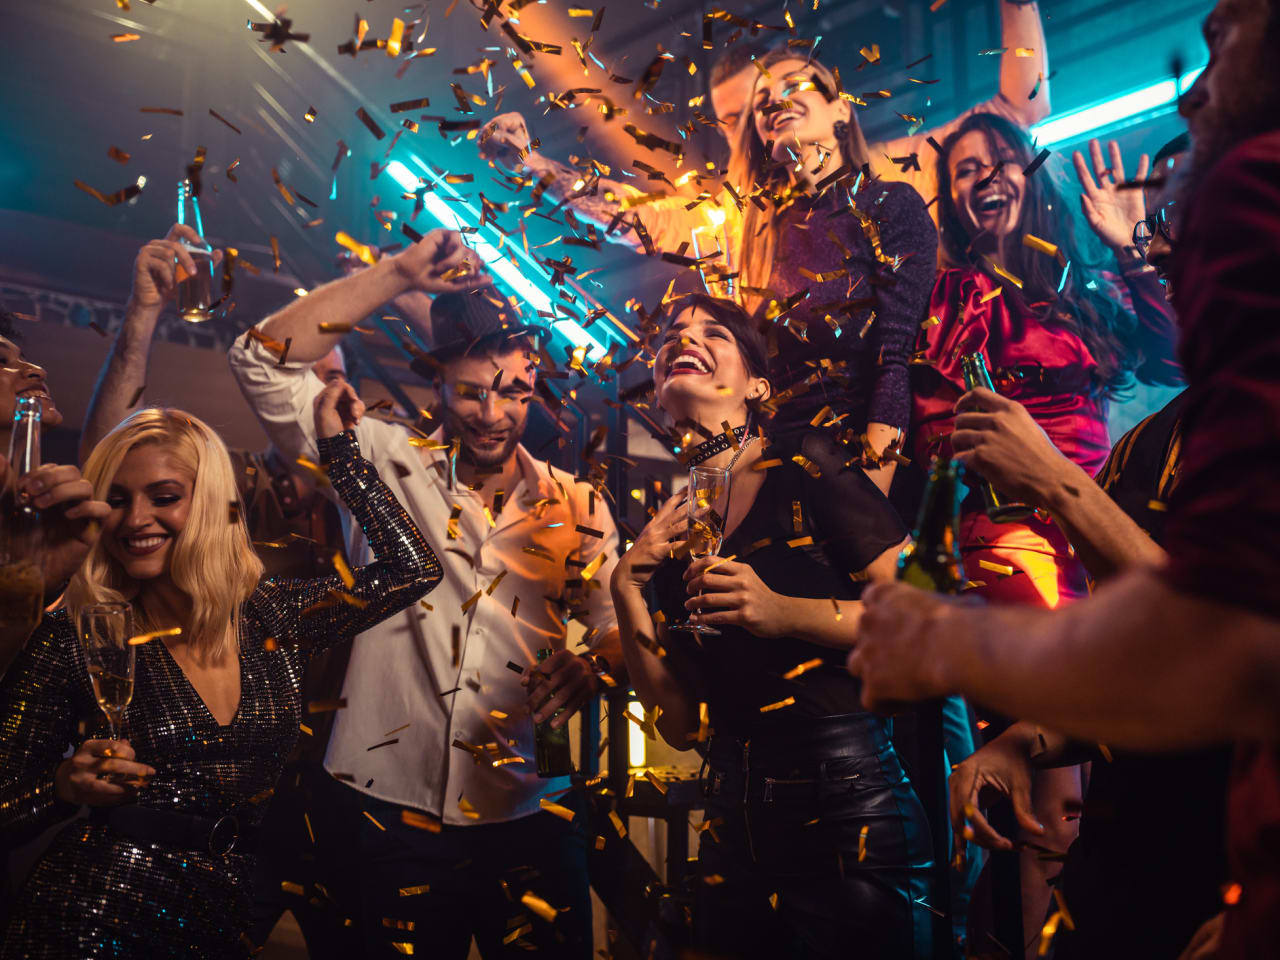 Feiern in einem Club ©bernardbodo/iStock / Getty Images Plus via Getty Images